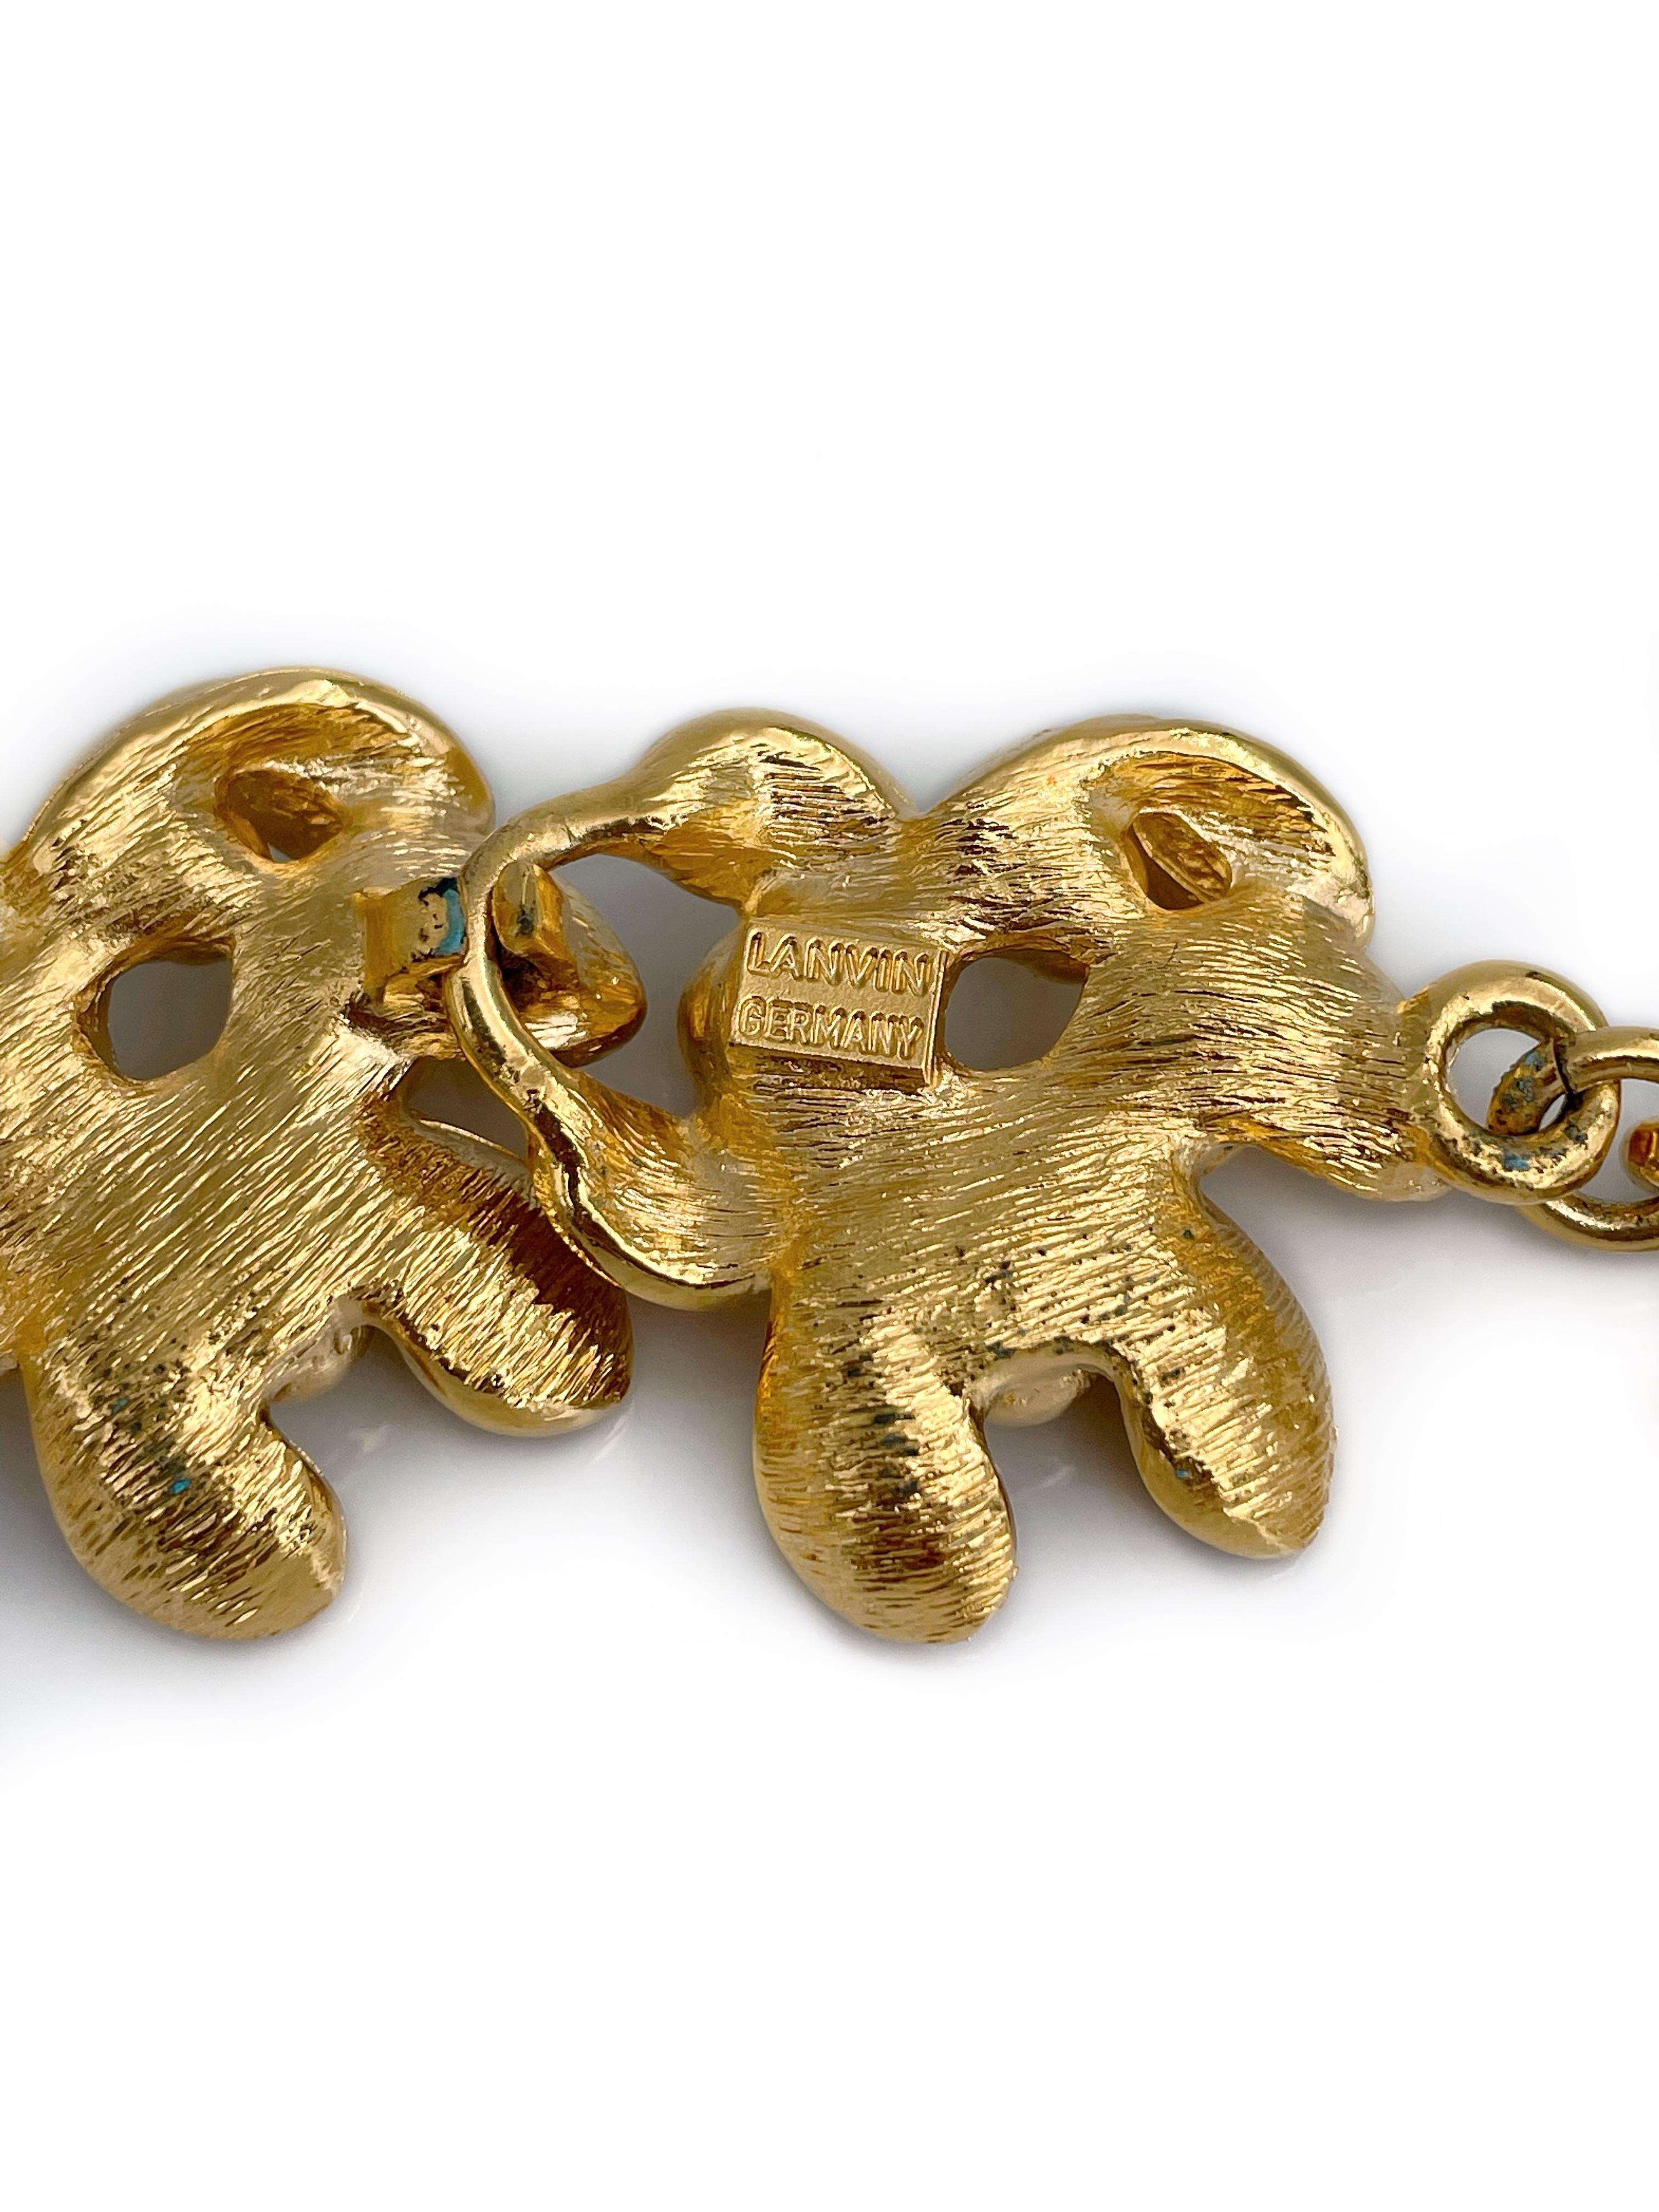 Modern 1990s Vintage Lanvin Gold Tone Floral Design Bracelet